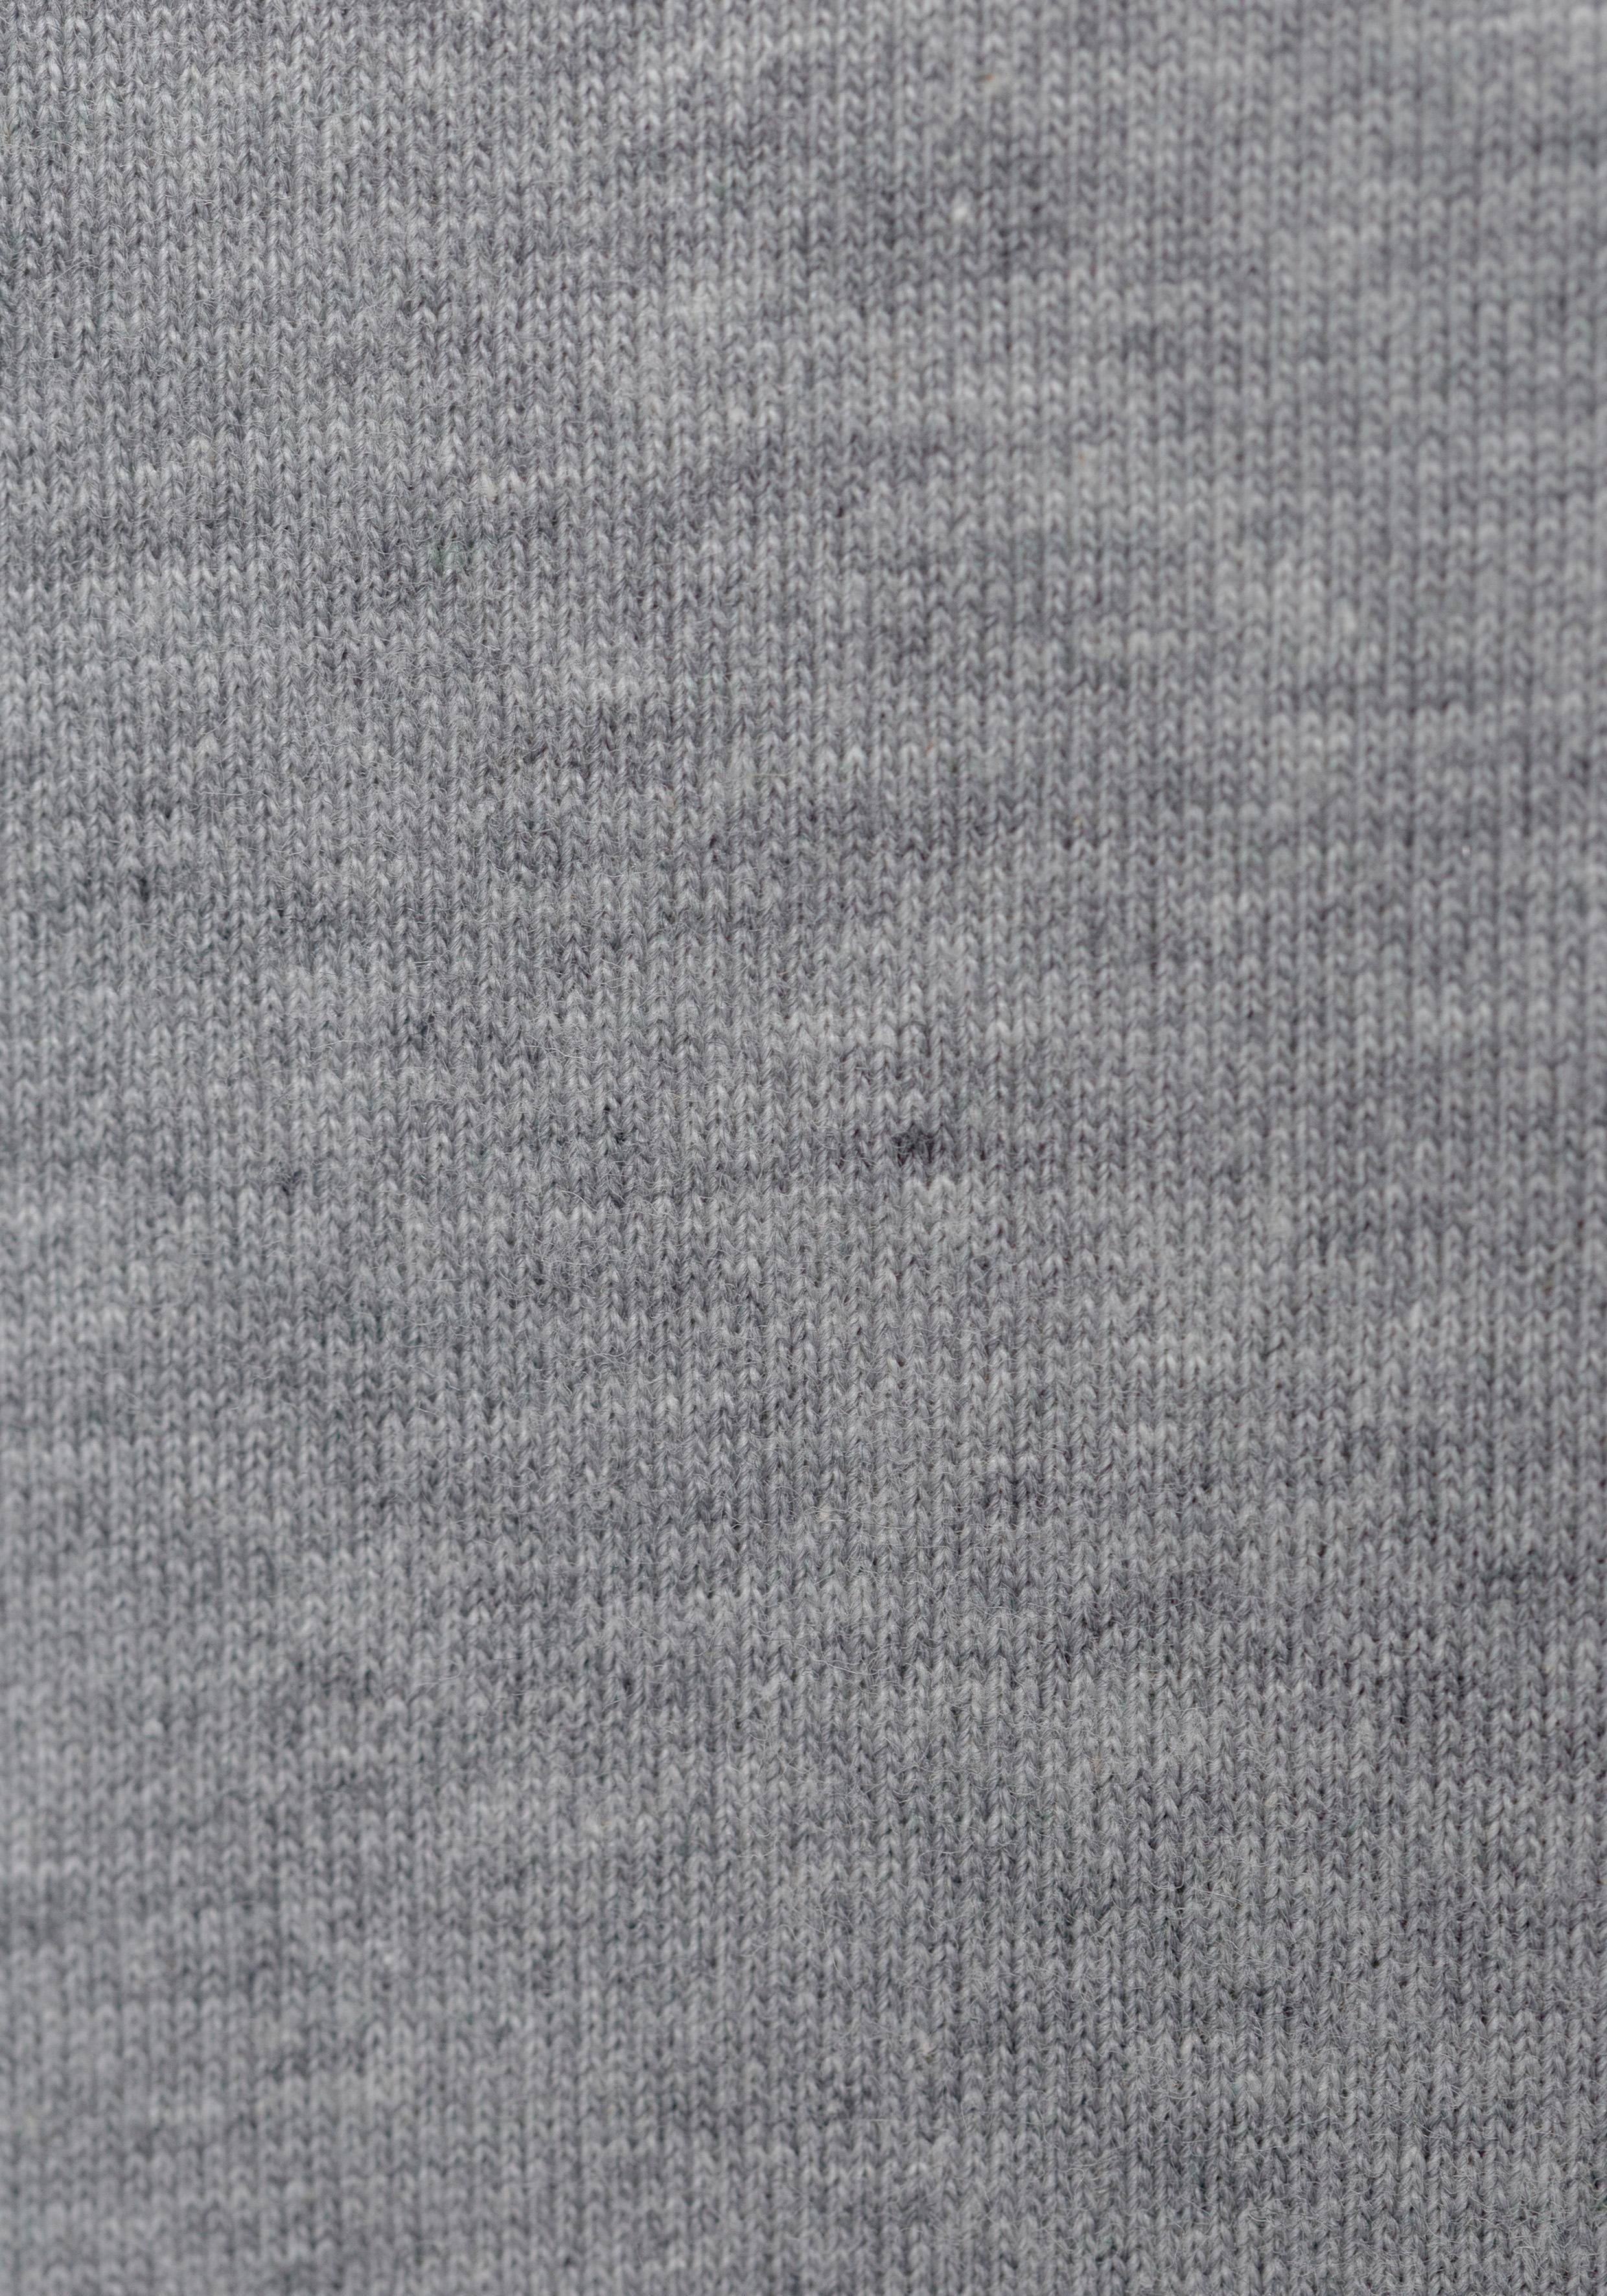 grau-meliert, Rundhals assorted_pre-pack, dezentem (3er-Pack) mit Logo-Print T-Shirt T-Shirt schwarz999 BOSS BOSS